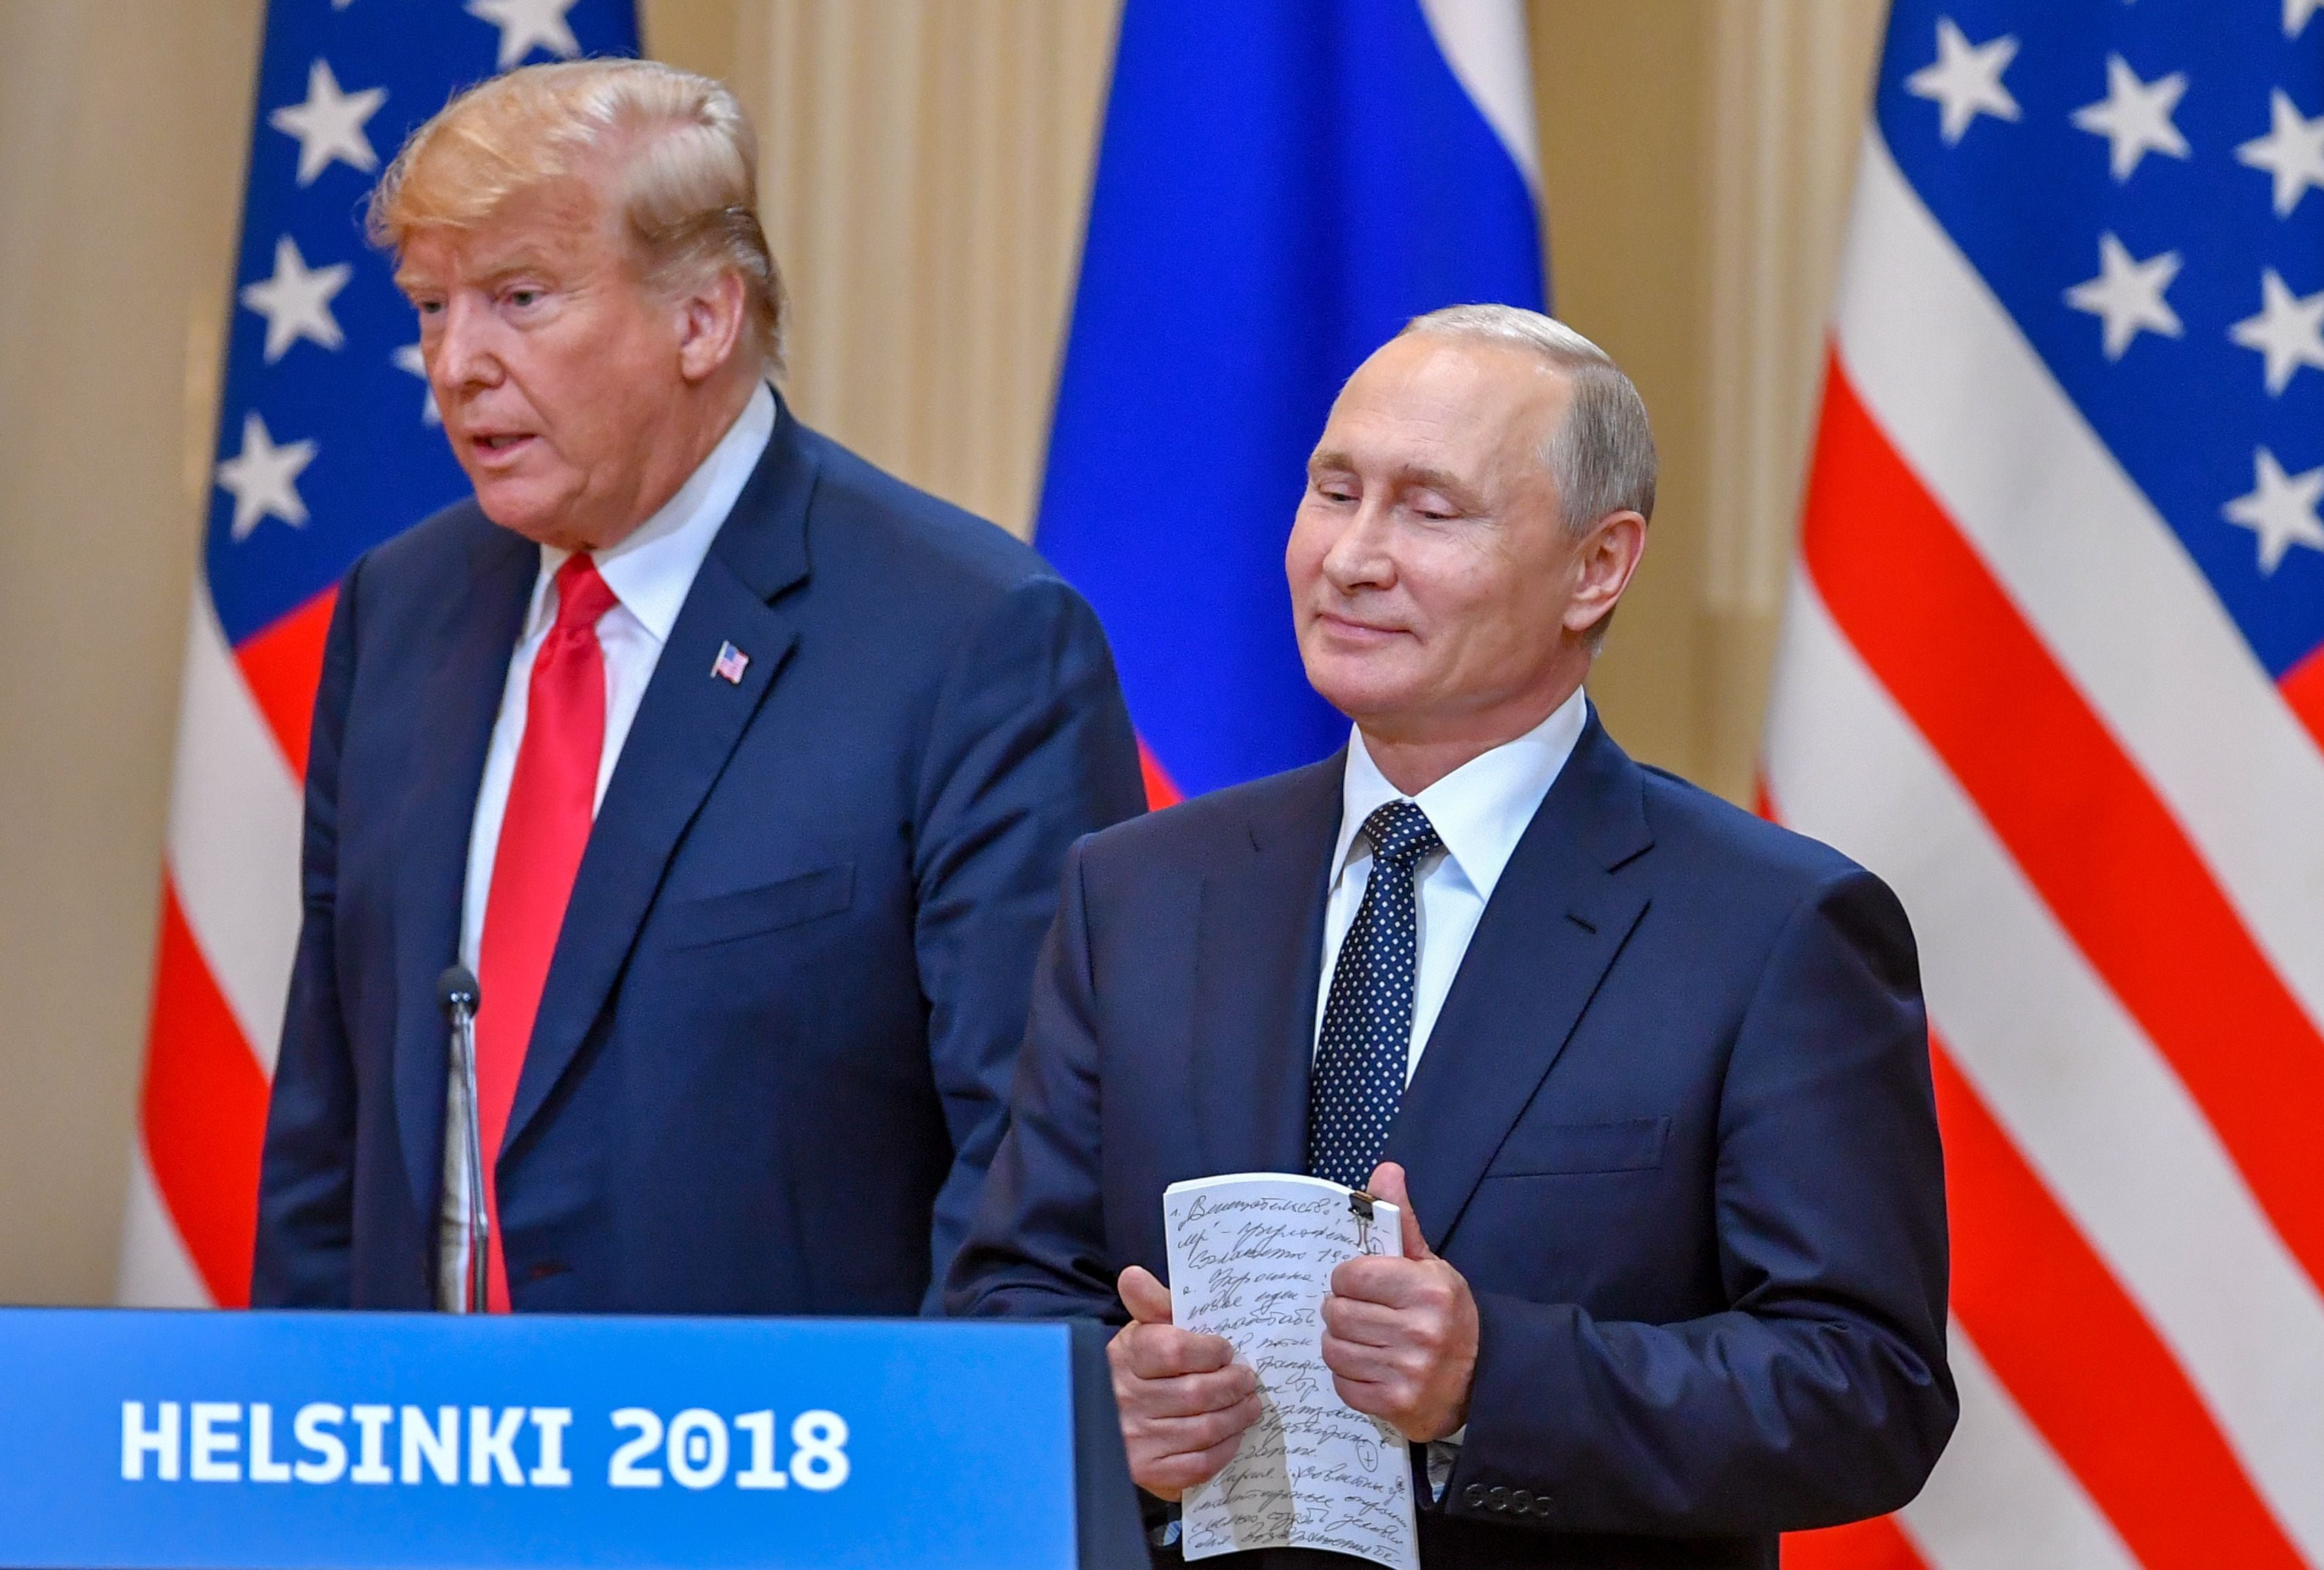 Donald Trump with Vladimir Putin